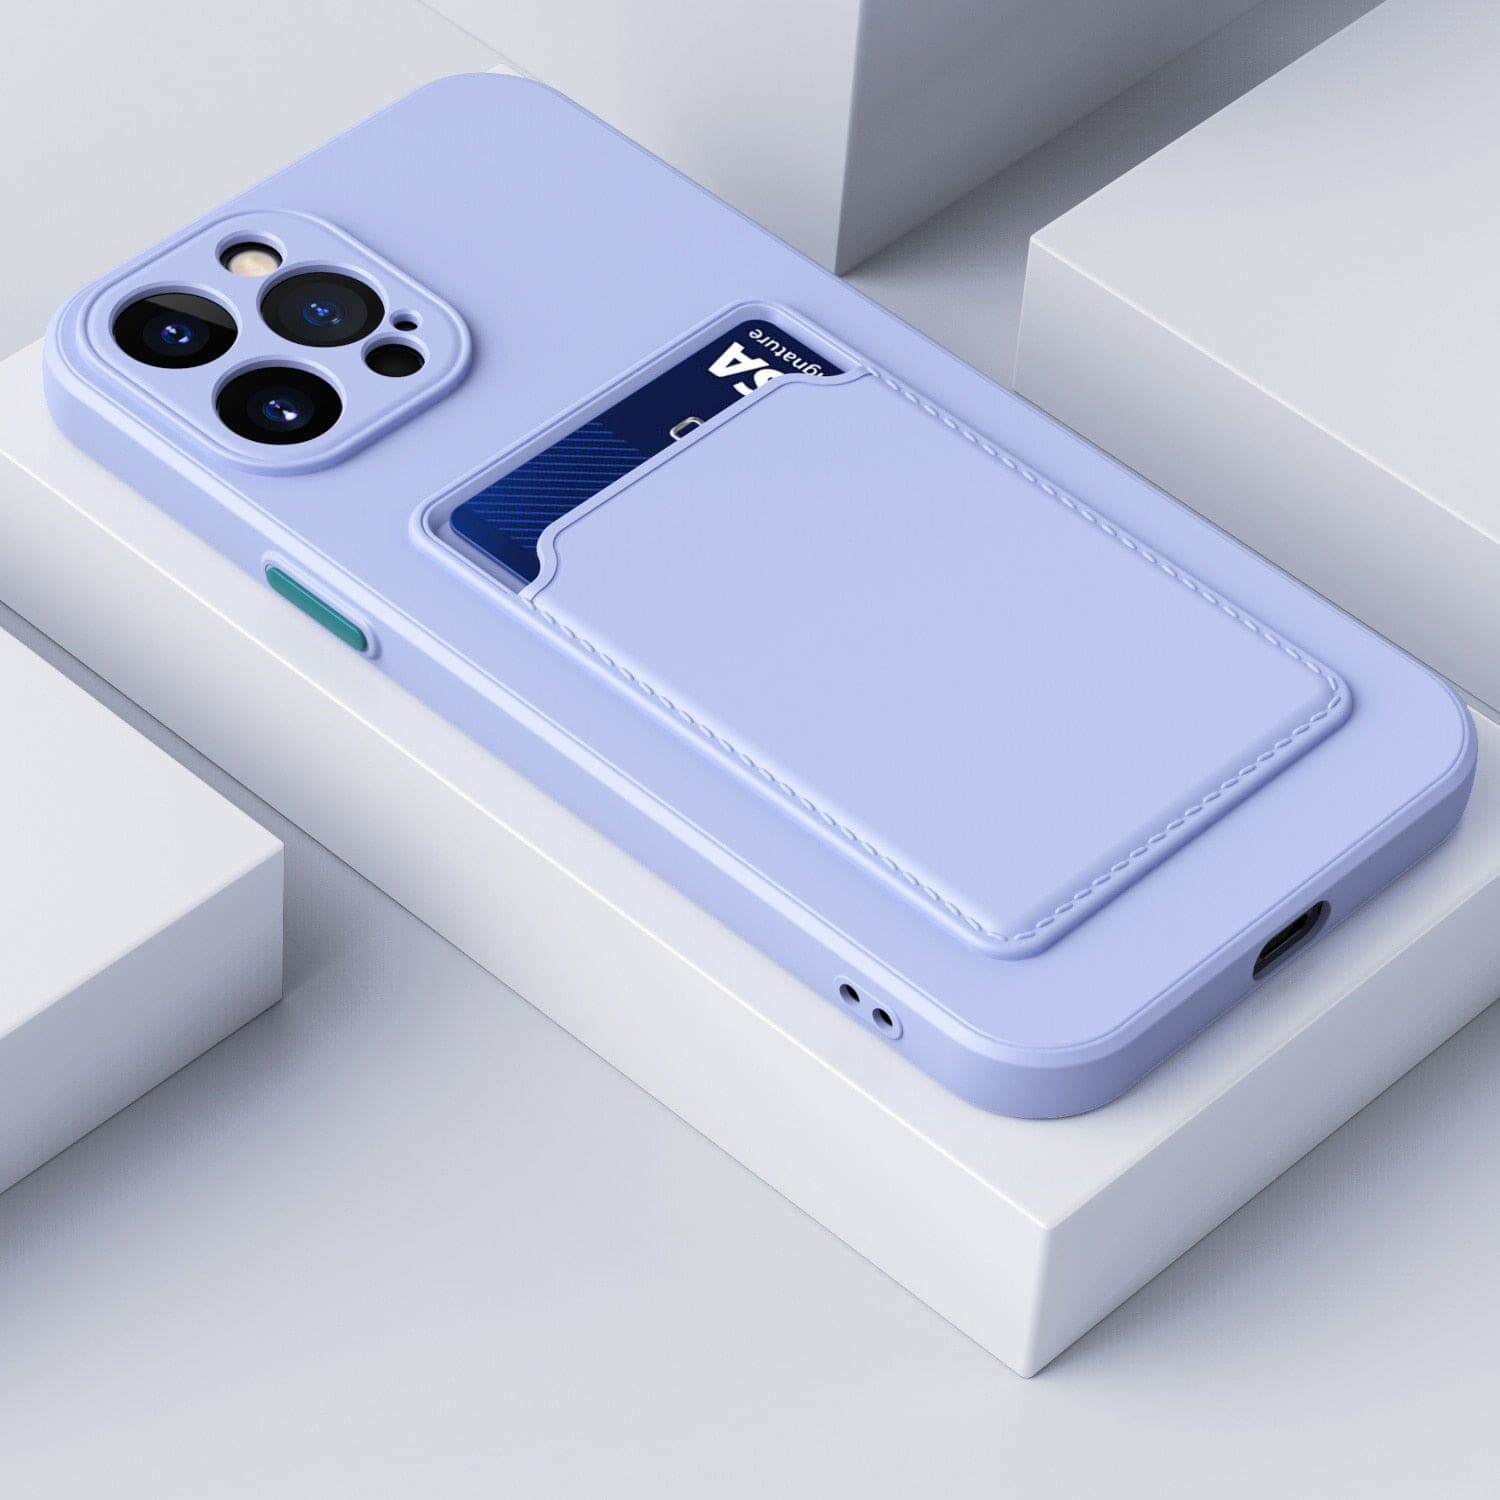 Silikon iPhone Schutzhülle mit Kartenhalter - Violett / iPhone 12 mini - iPhone Schutzhülle